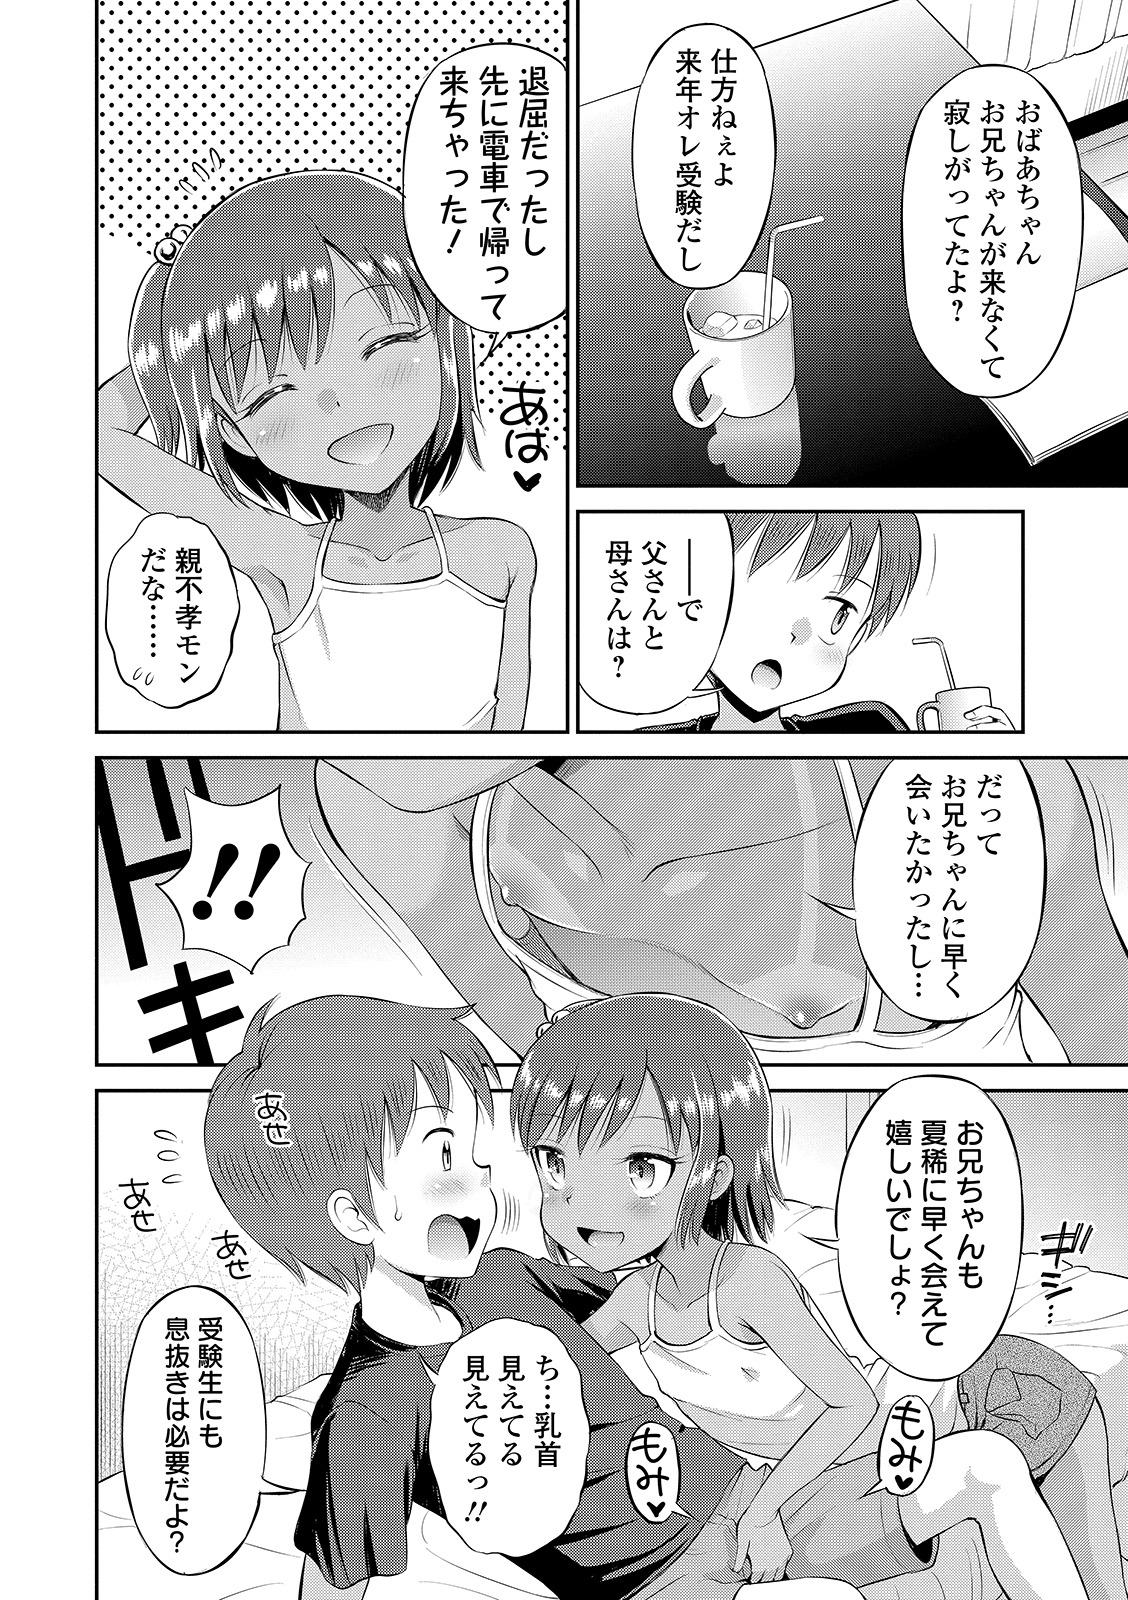 Holes Watashi ga Onnanoko ni Naru made Three Some - Page 8